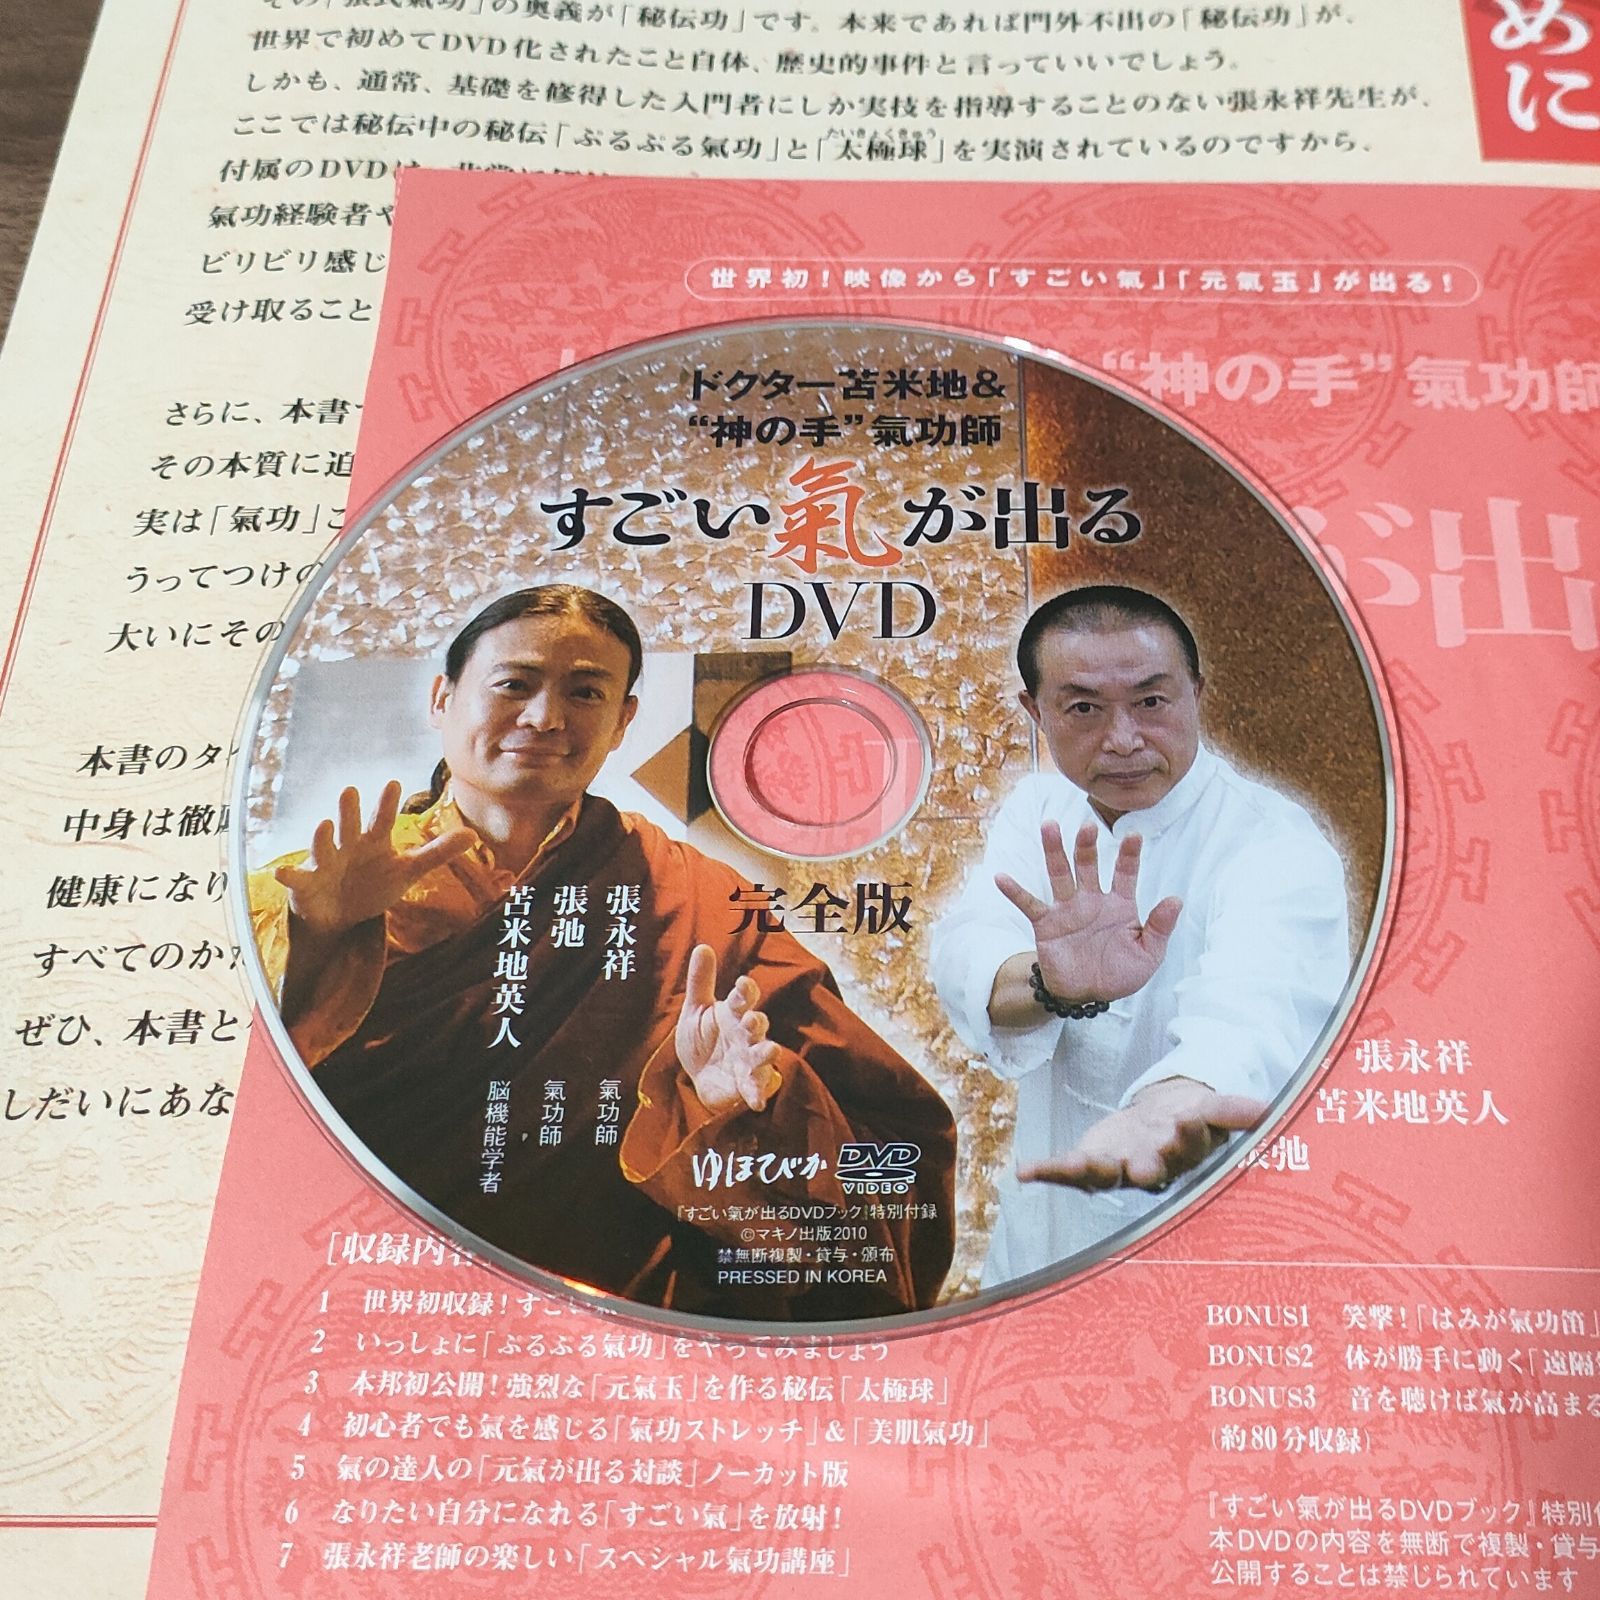 ゆほびか 神の手氣功師 秘伝気功DVD - DVD/ブルーレイ